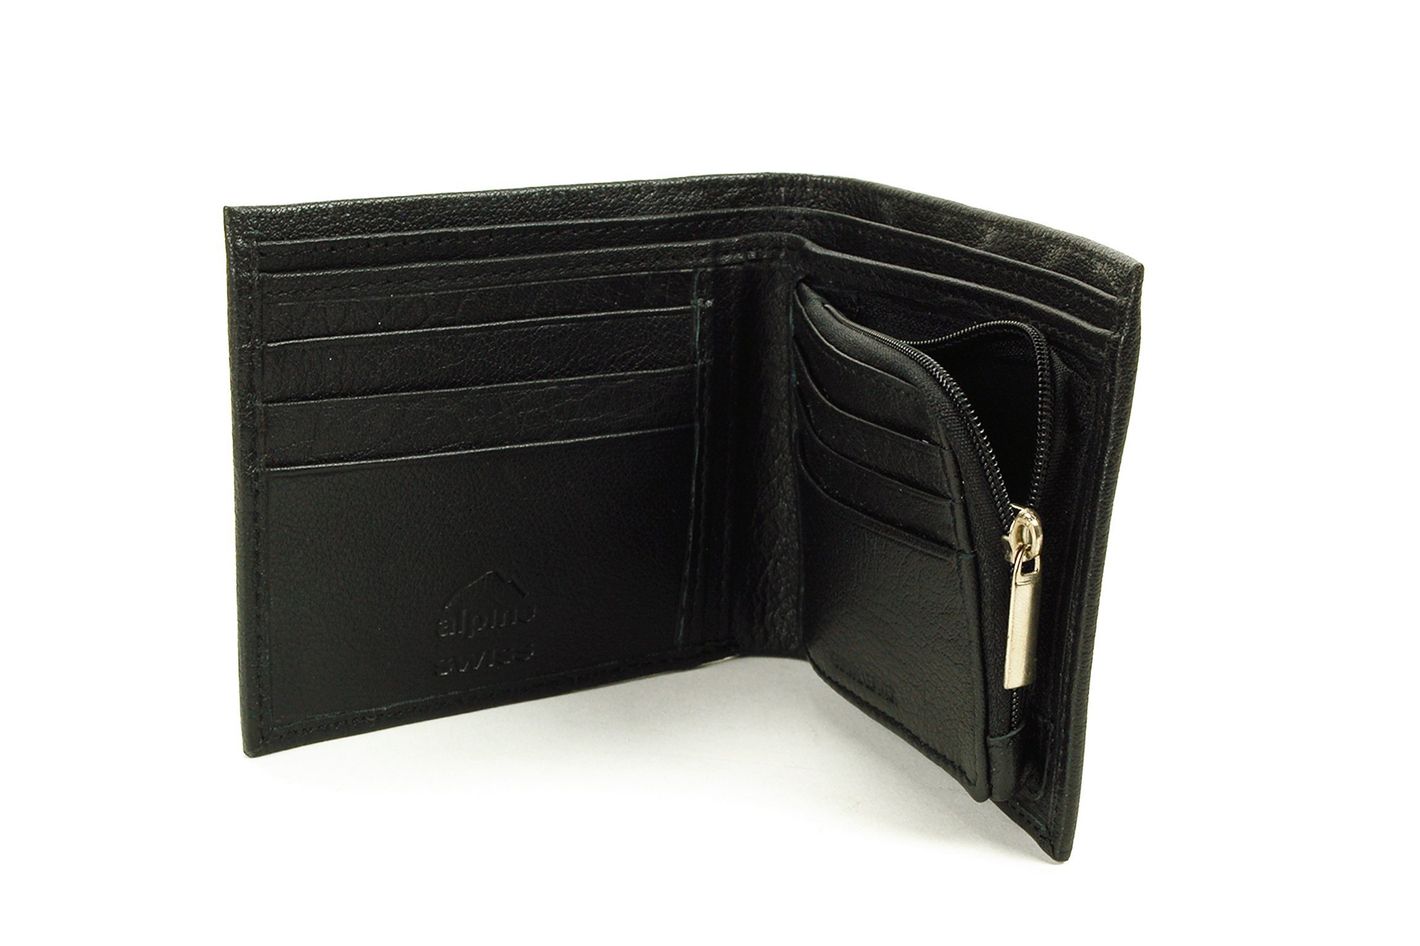 METROCITY Women's Bifold Card Case Wallet M221WP0312Z Black Leather  Snap Type